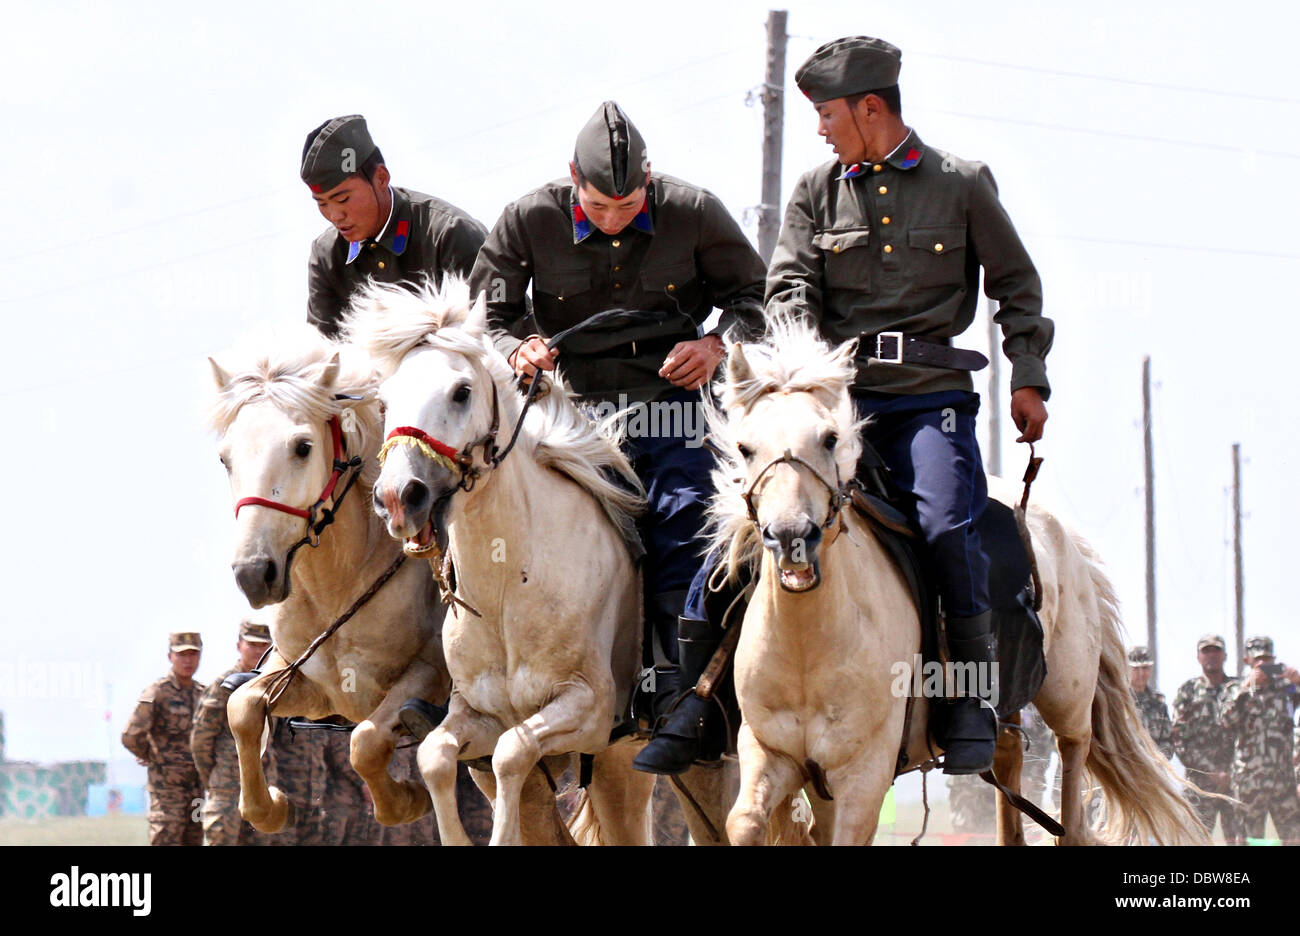 Les membres des Forces armées mongoles 234 unité de cavalerie faire une démonstration de leur circonscription au cours de la cérémonie d'ouverture de l'exercice Khaan Quest le 3 août 2013 dans cinq Hills Domaine de formation, la Mongolie. Banque D'Images